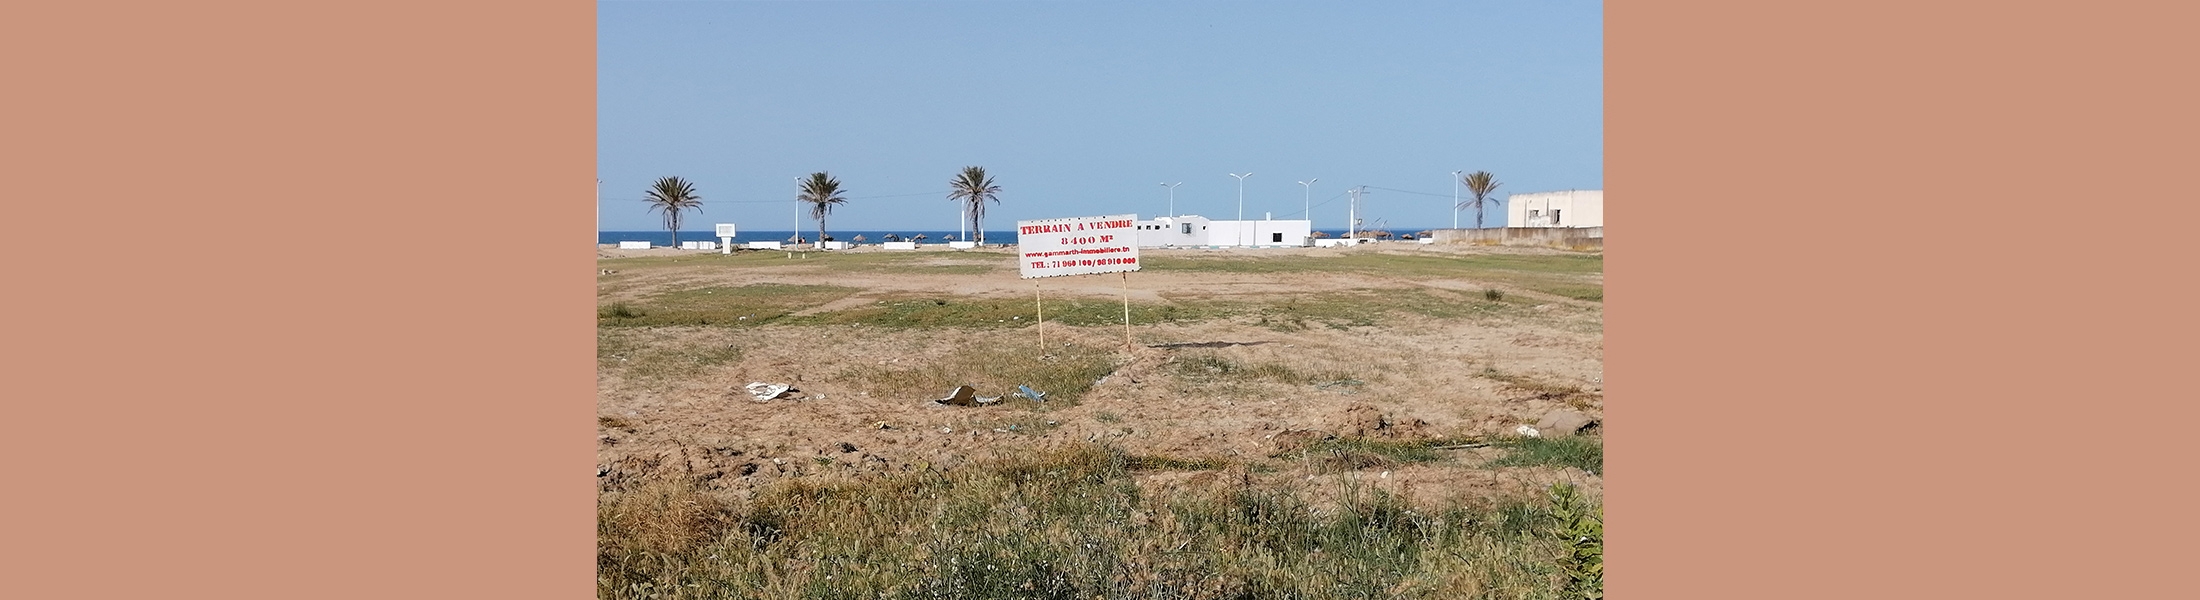 قطعة الأرض رواد الشاطئ برواد - اريانة (طلب العروض عدد 03 لسنة 2022)